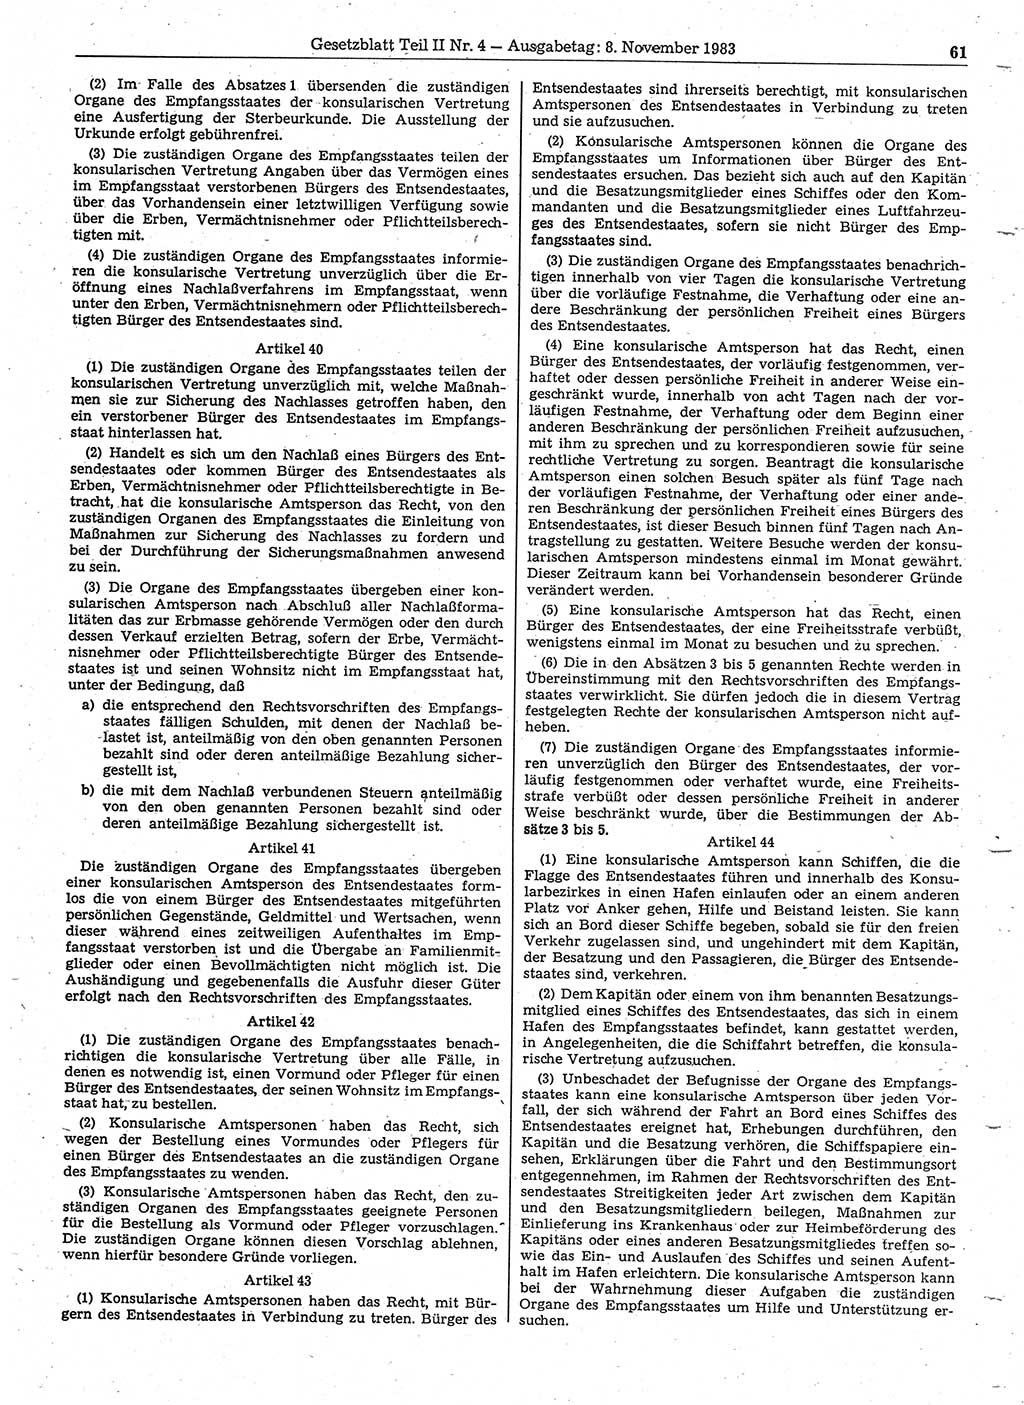 Gesetzblatt (GBl.) der Deutschen Demokratischen Republik (DDR) Teil ⅠⅠ 1983, Seite 61 (GBl. DDR ⅠⅠ 1983, S. 61)